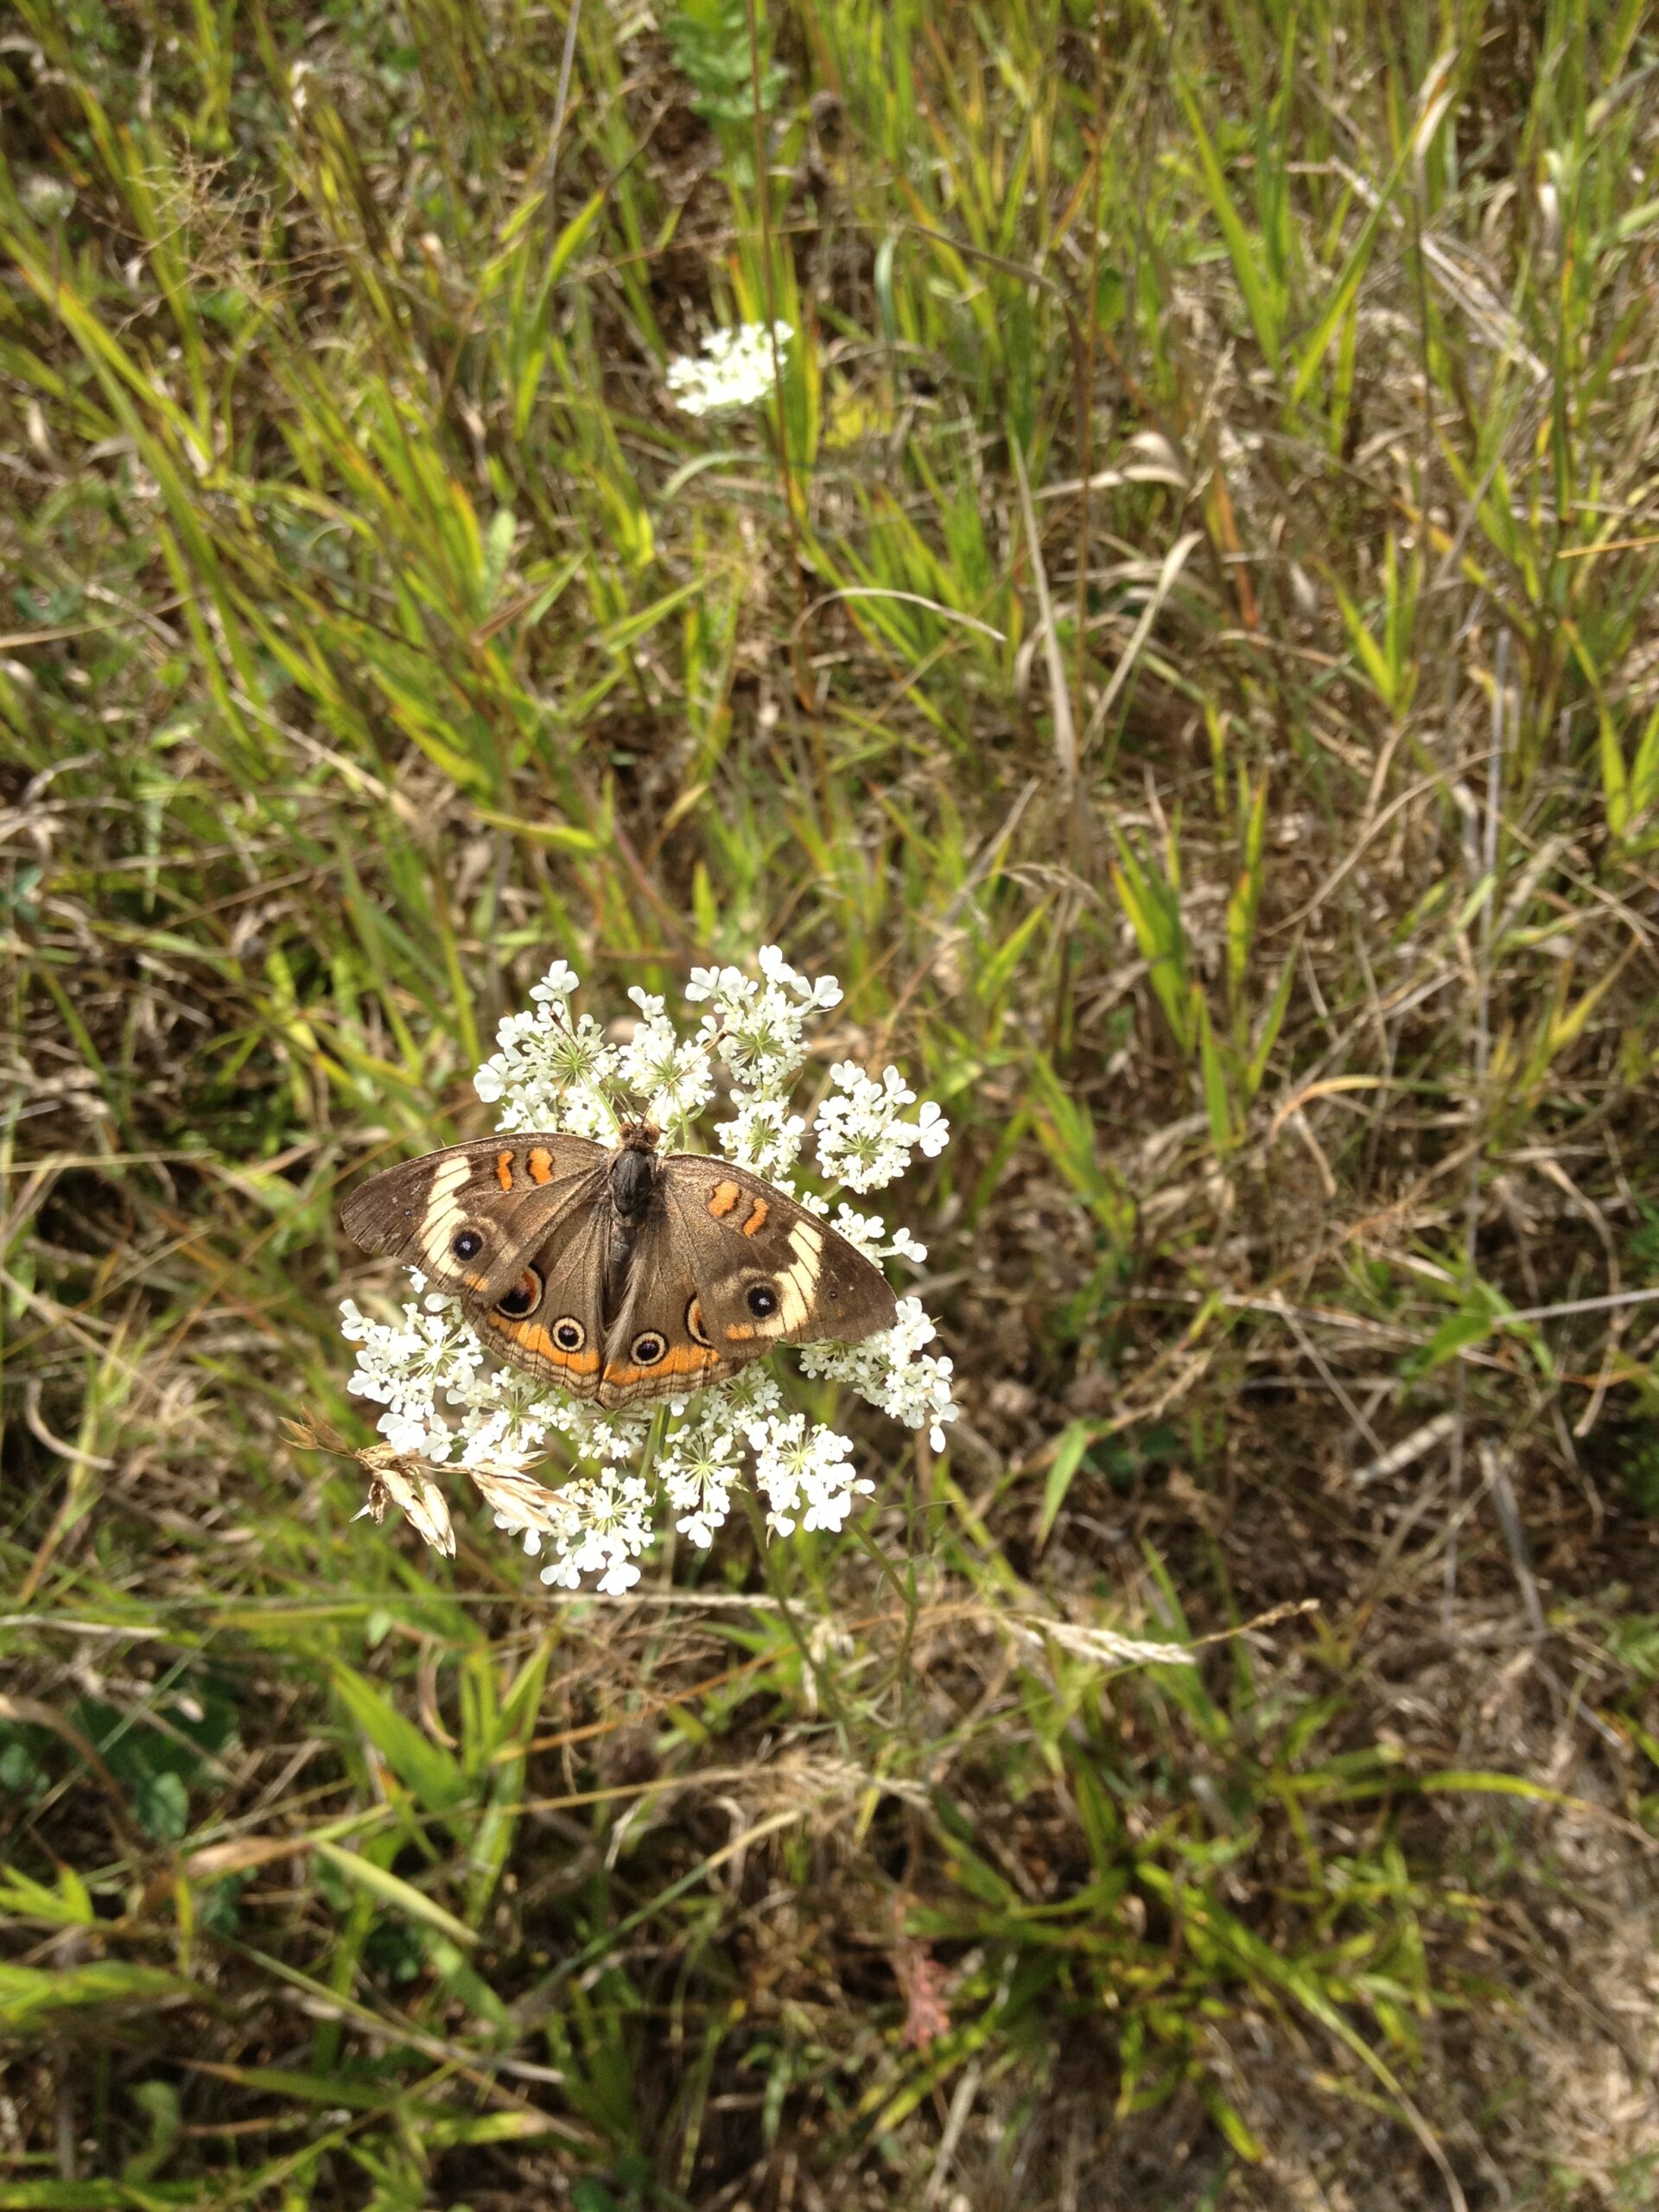 Butterfly on flower in field.